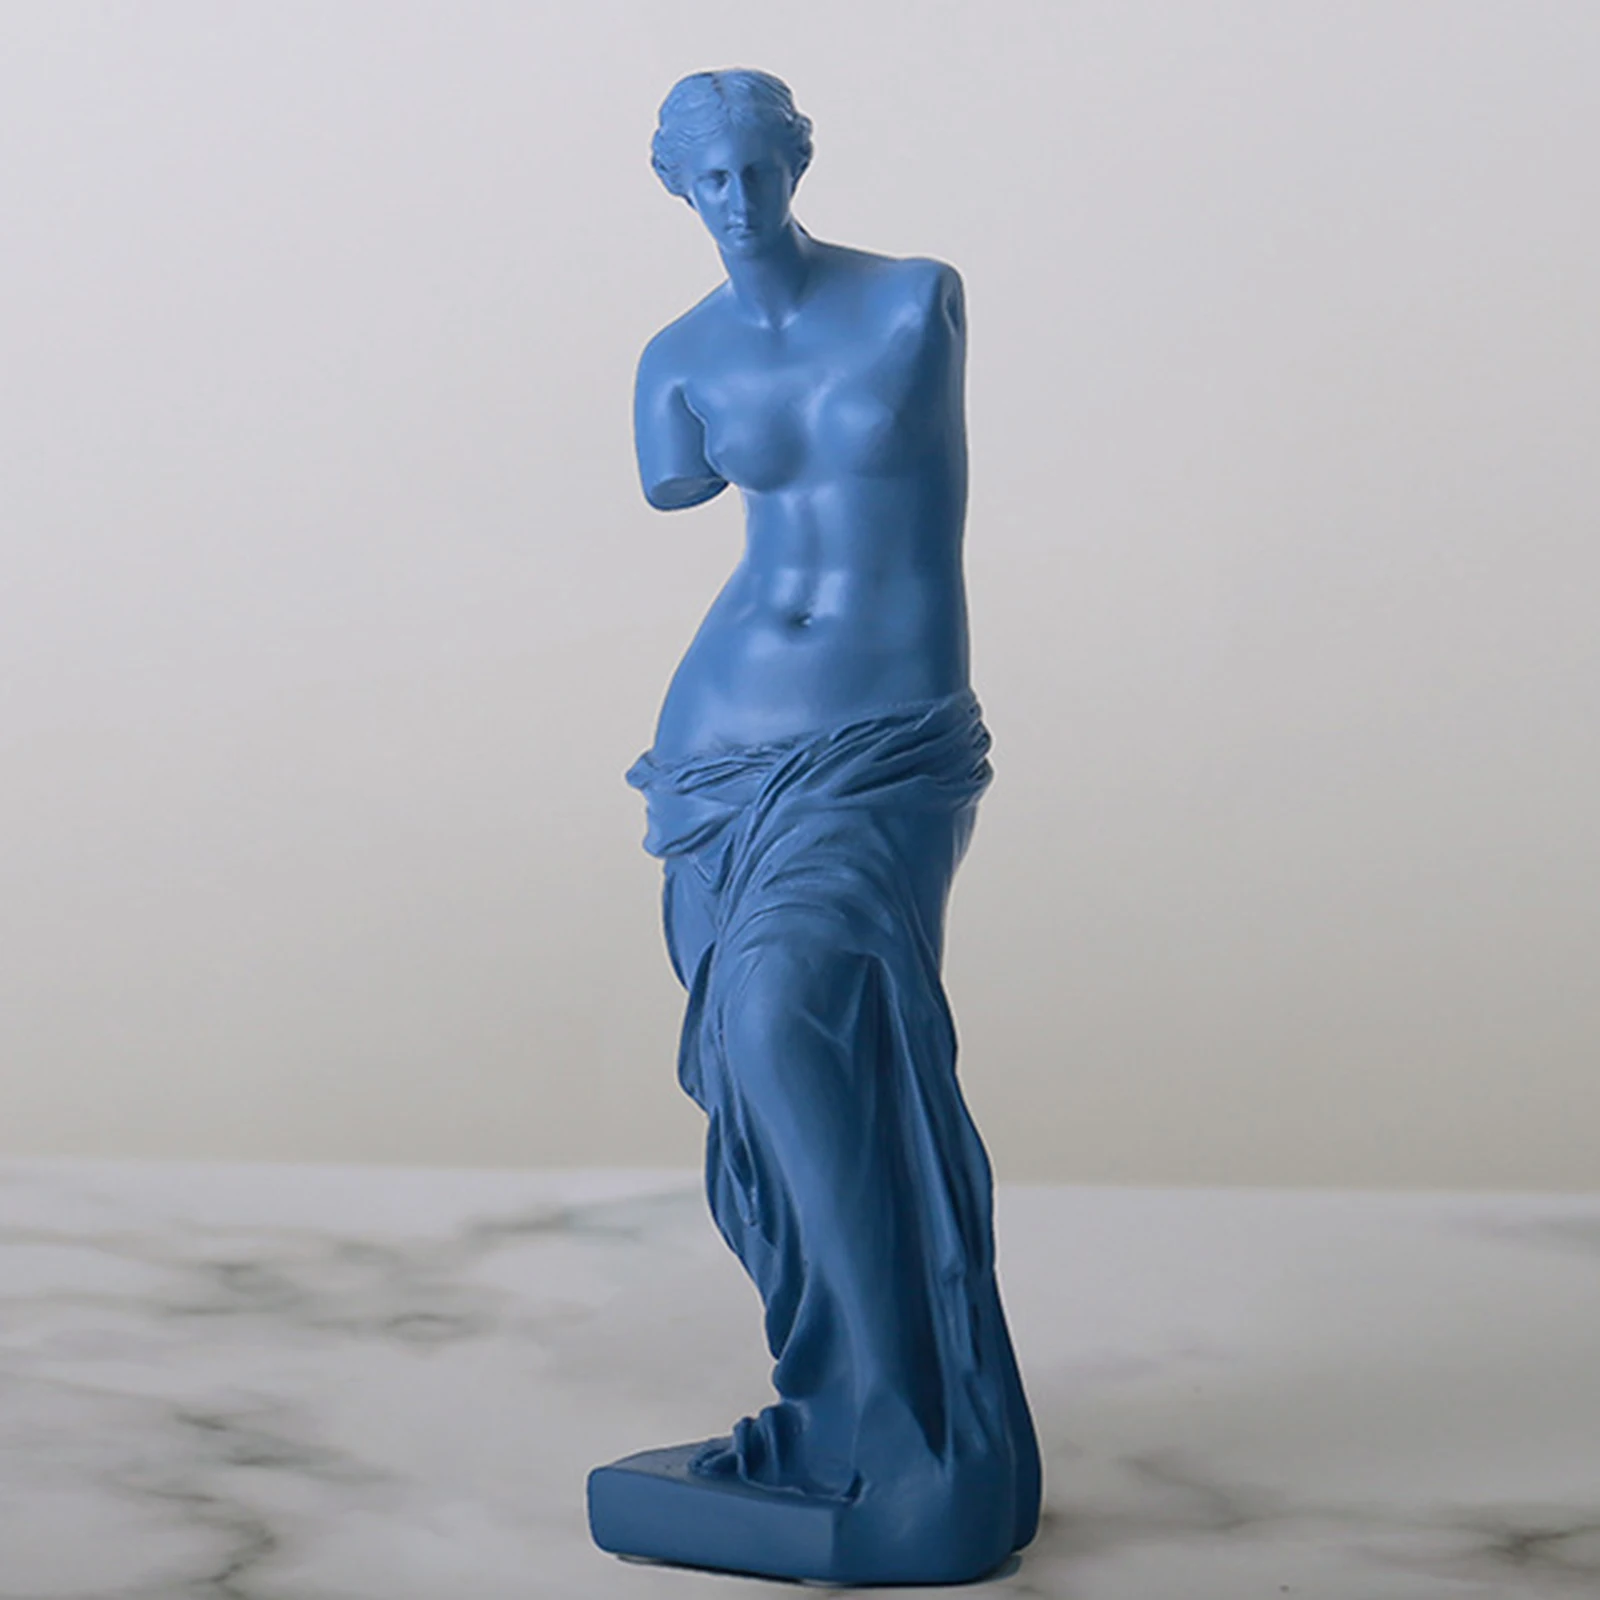 Art Goddess Sculpture Ornament Figurine Craft Statue Shelf Desktop Artwork